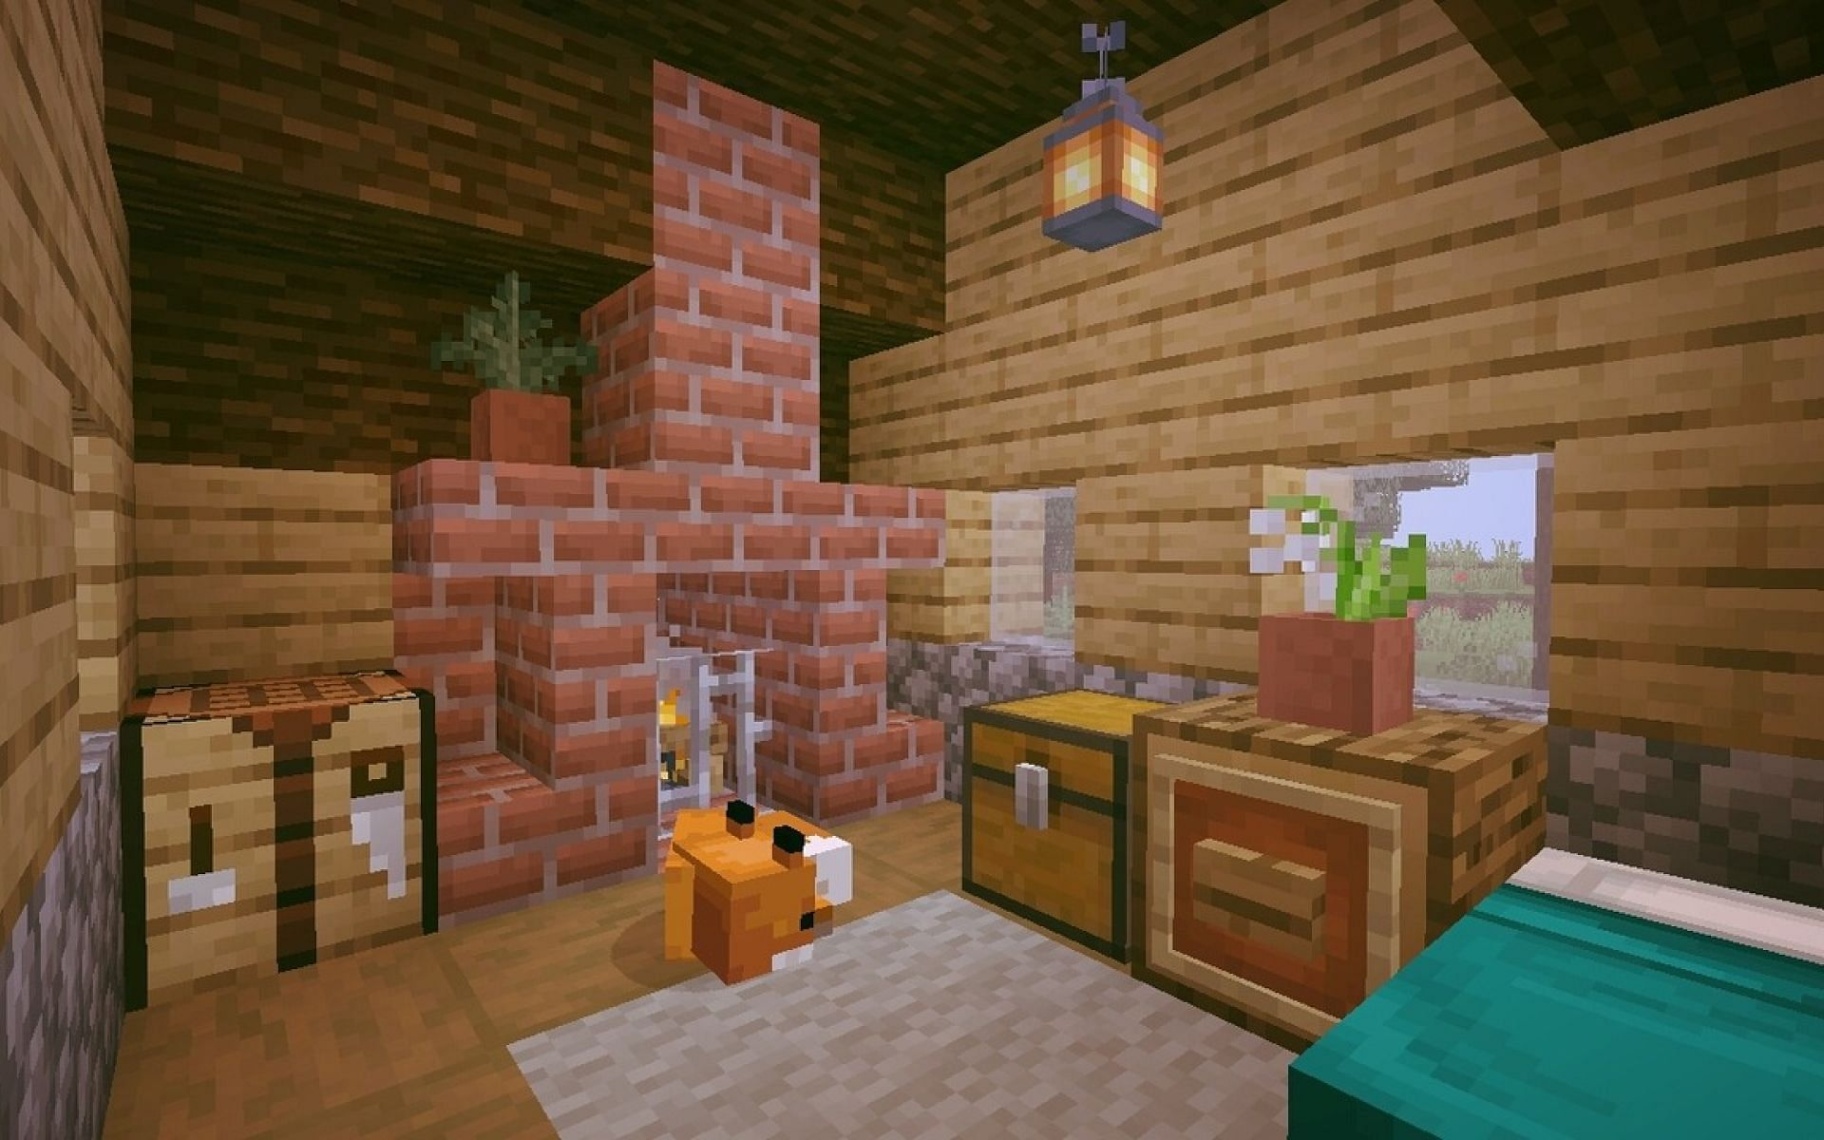 minecraft home decor Niche Utama Home  best interior decoration ideas for Minecraft houses